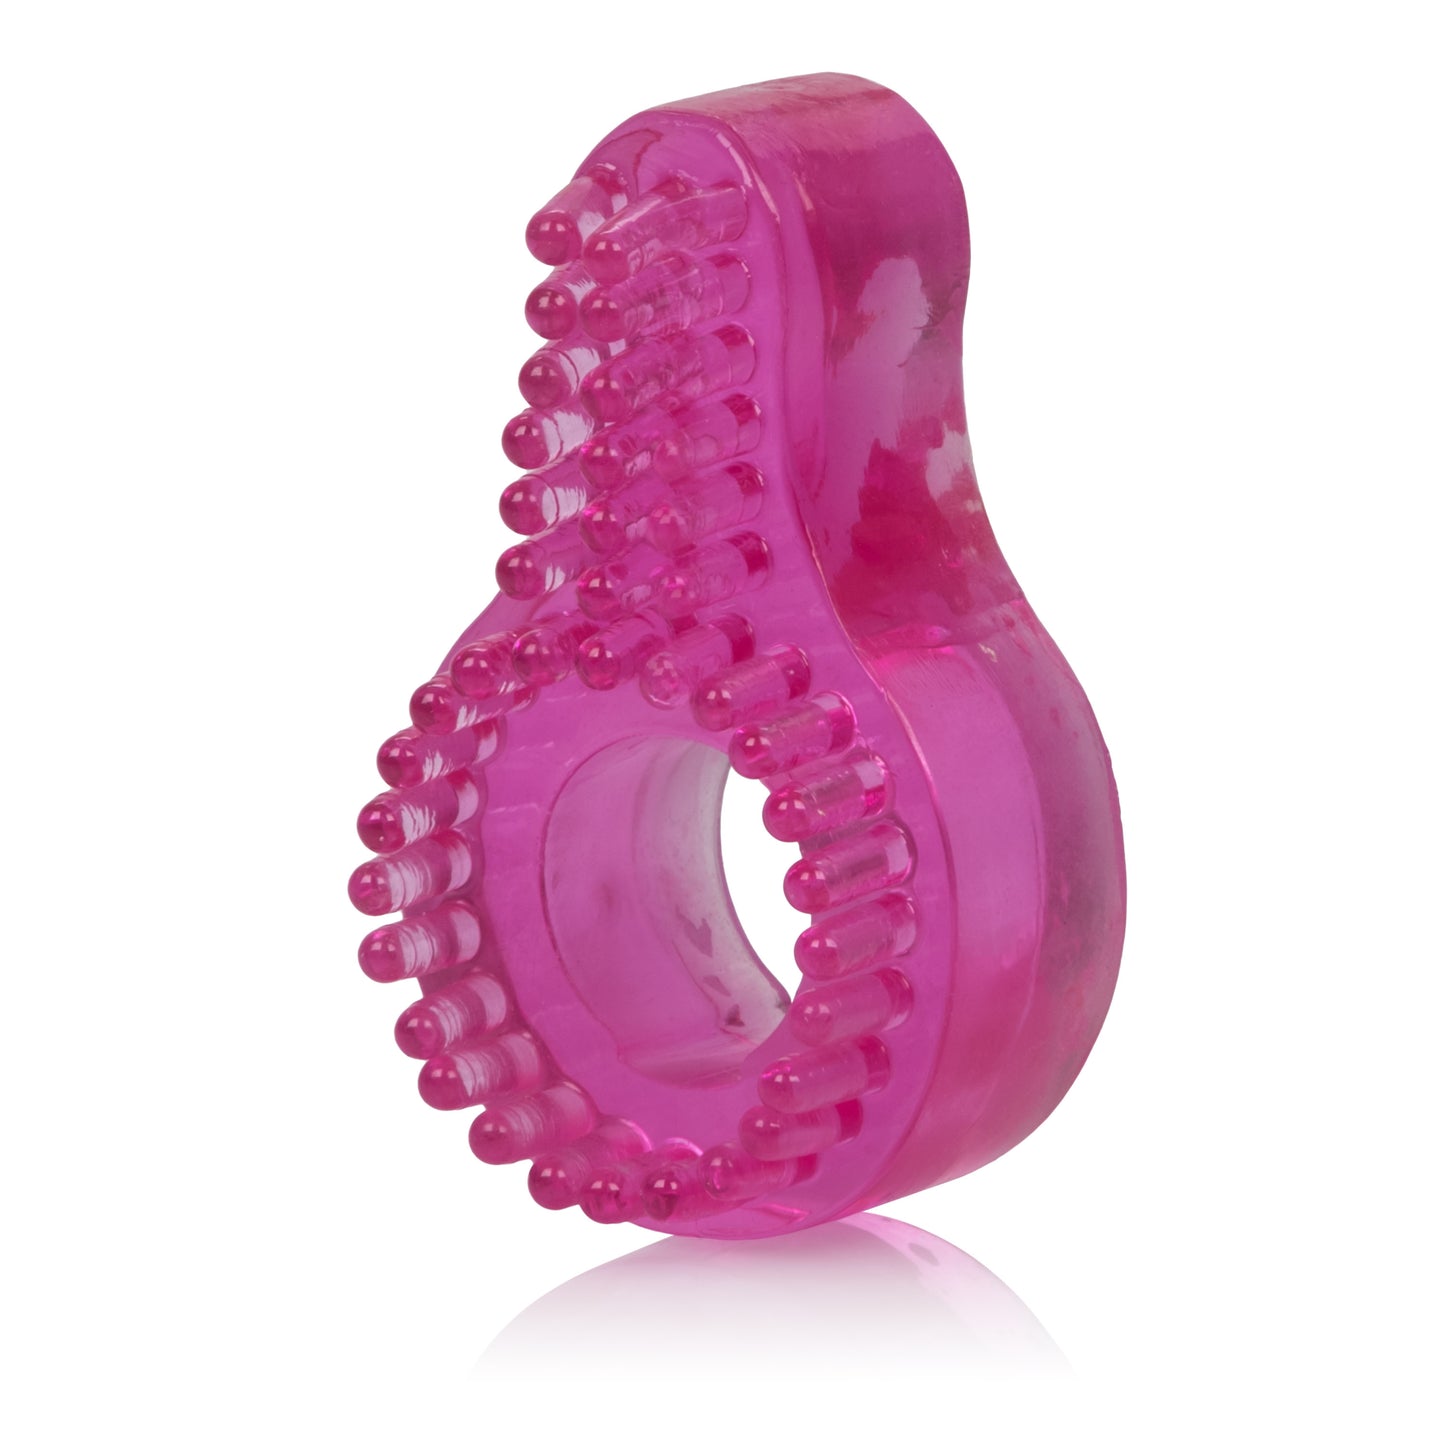 Super Stretch Enhancer Ring - Pink